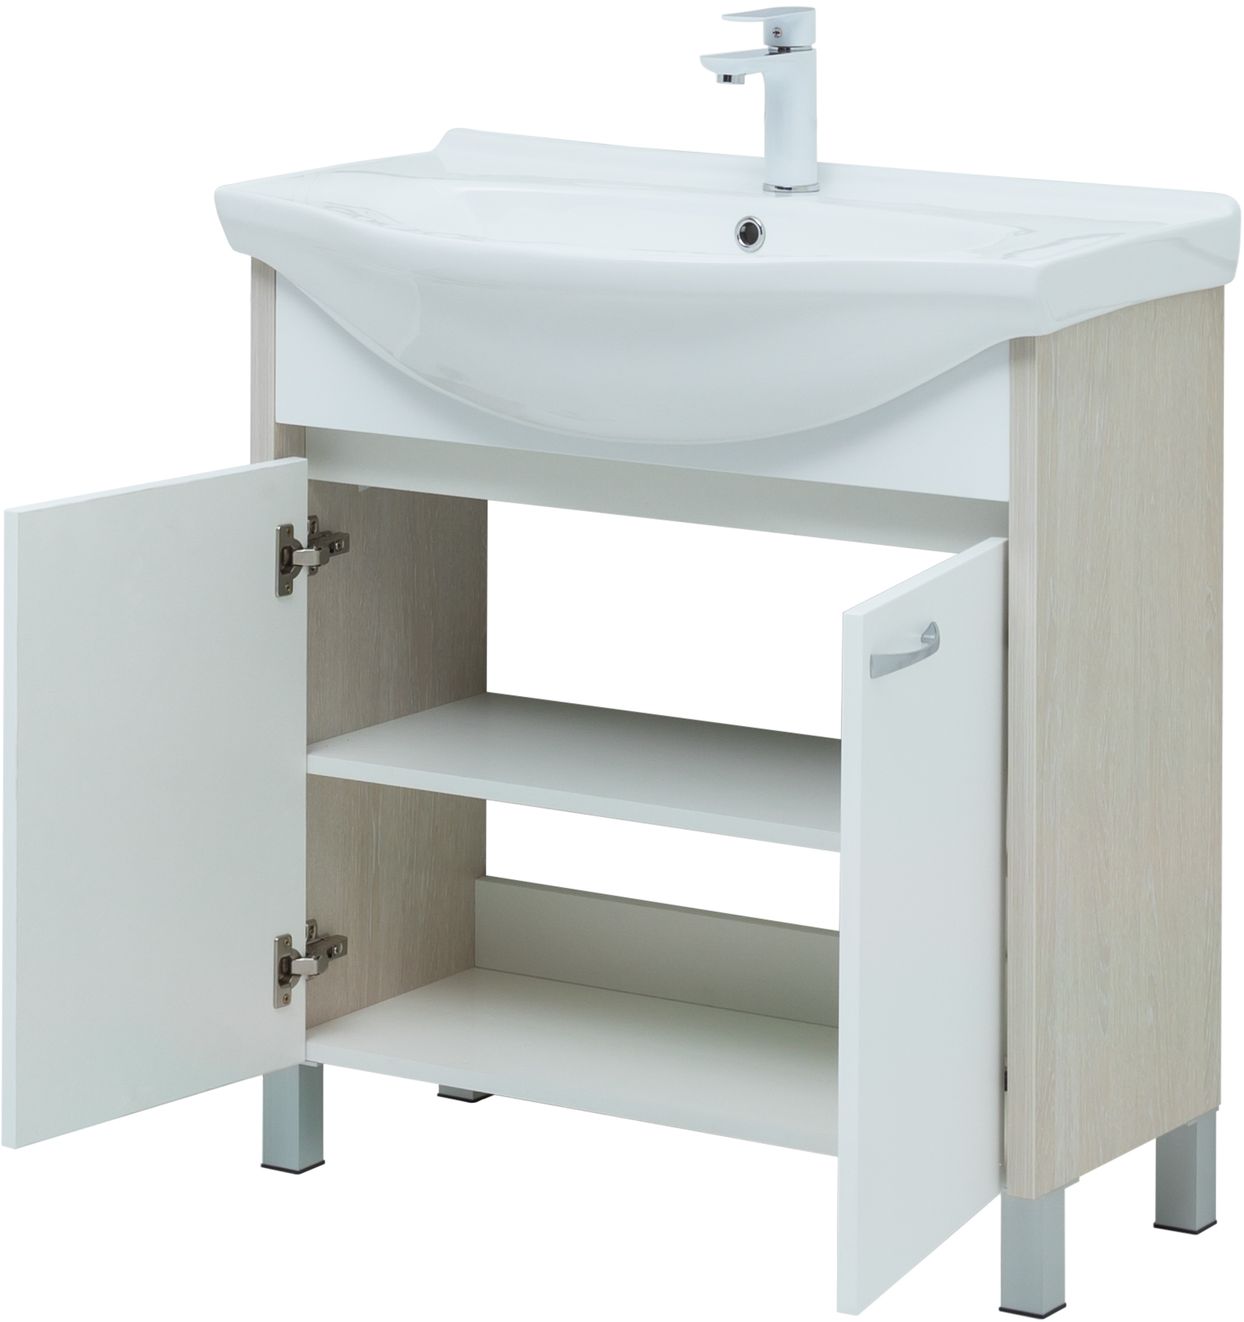 Мебель для ванной Aquanet Донна 81 см напольная 2 дверцы дуб, белый, цвет хром 274170 - фото 6